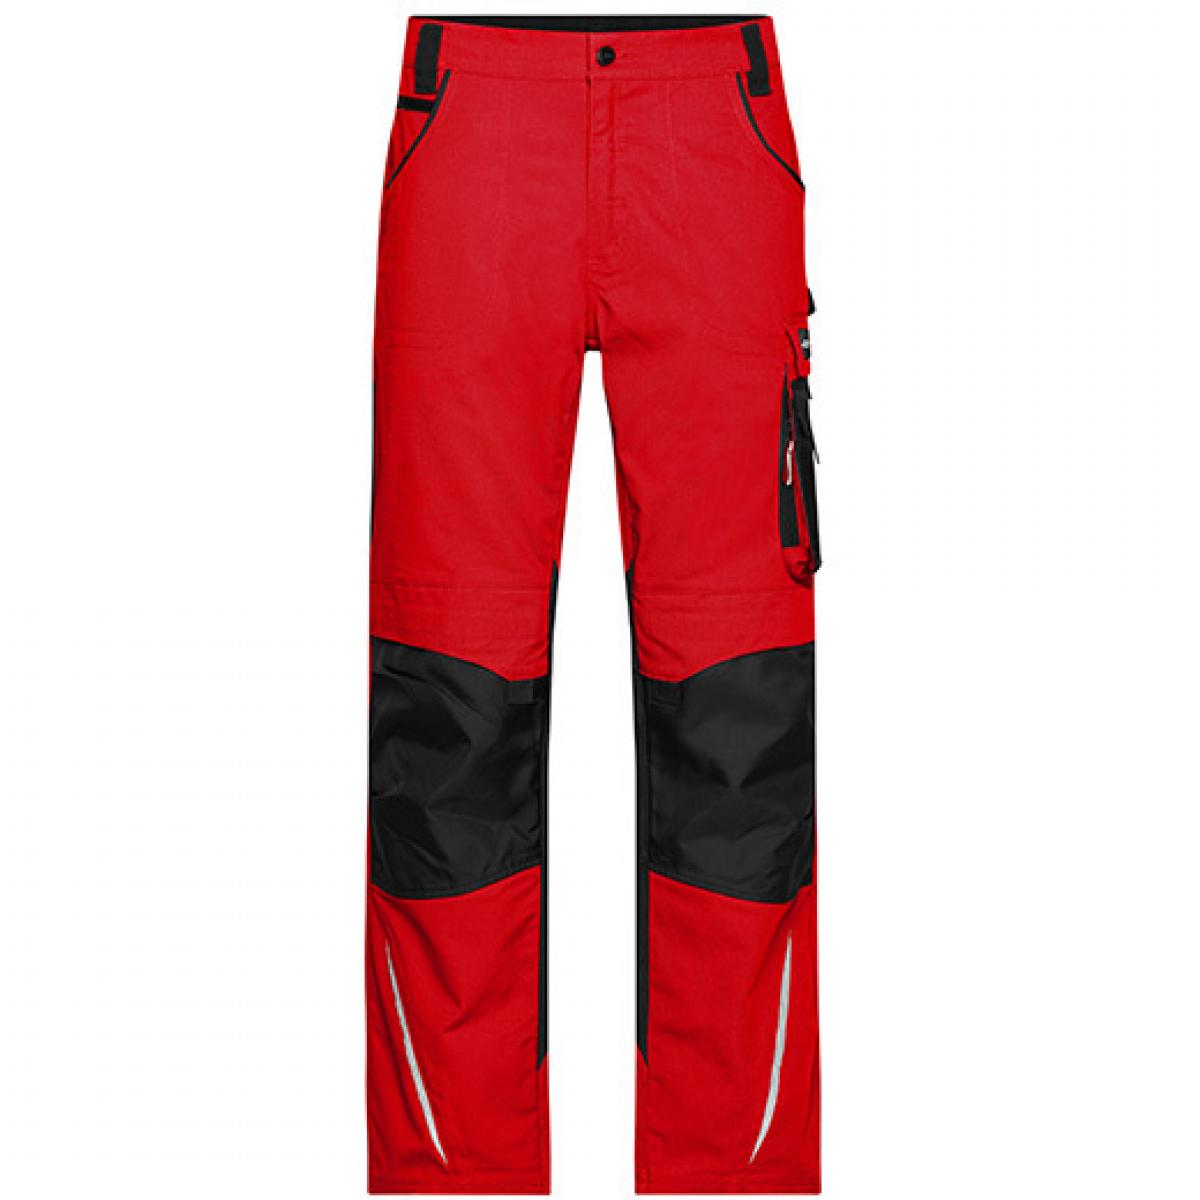 Hersteller: James+Nicholson Herstellernummer: JN832 Artikelbezeichnung: Workwear Pants -STRONG- / Arbeitshose lang Farbe: Red/Black